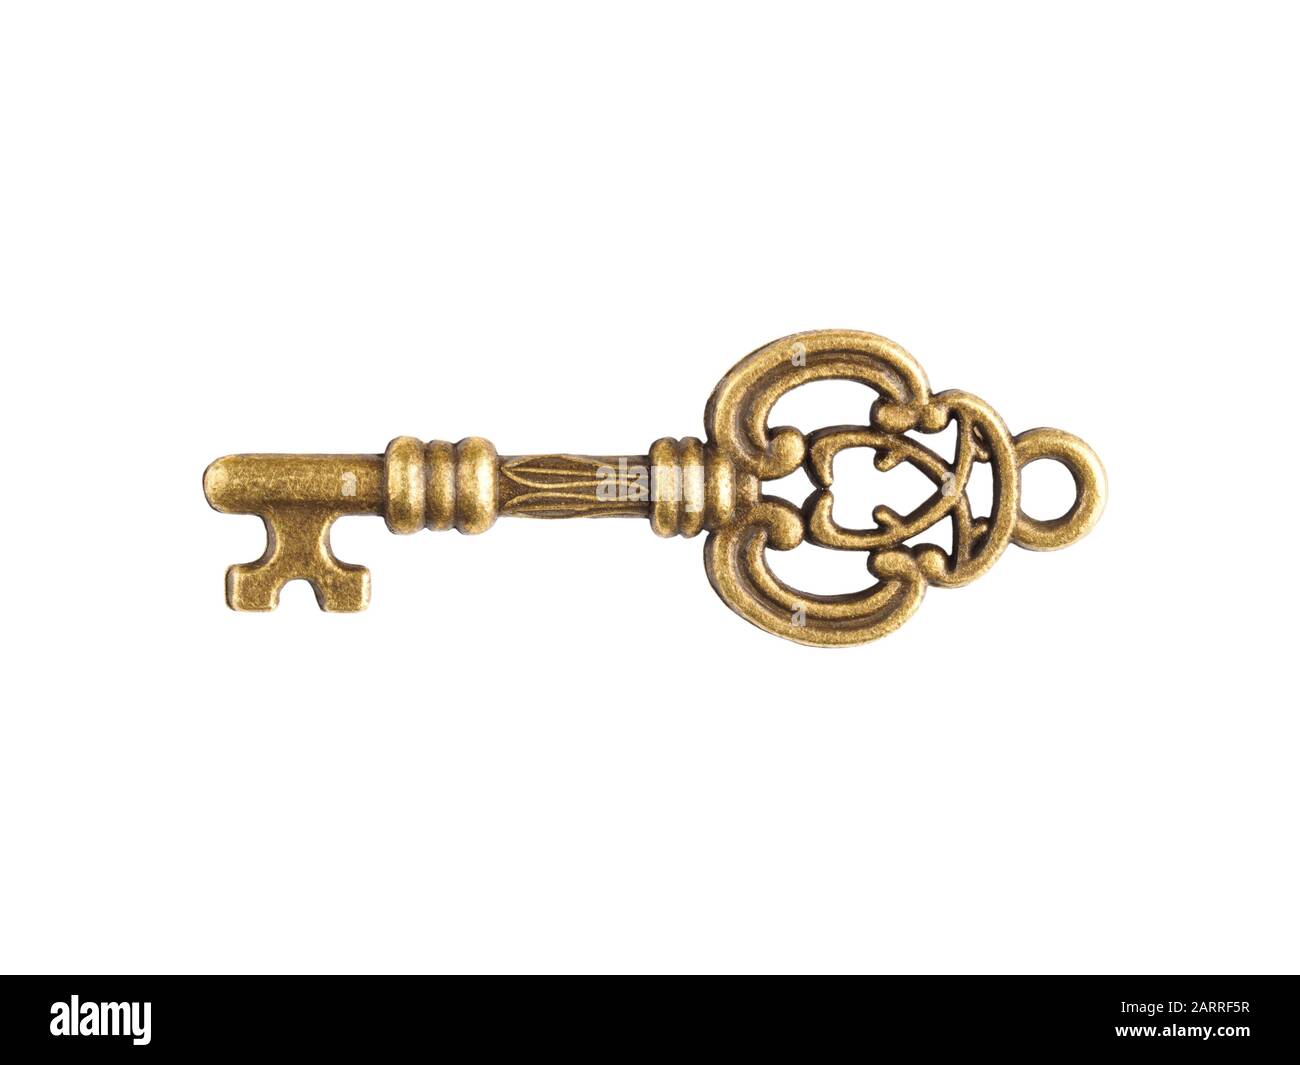 Antique key isolated on white Stock Photo